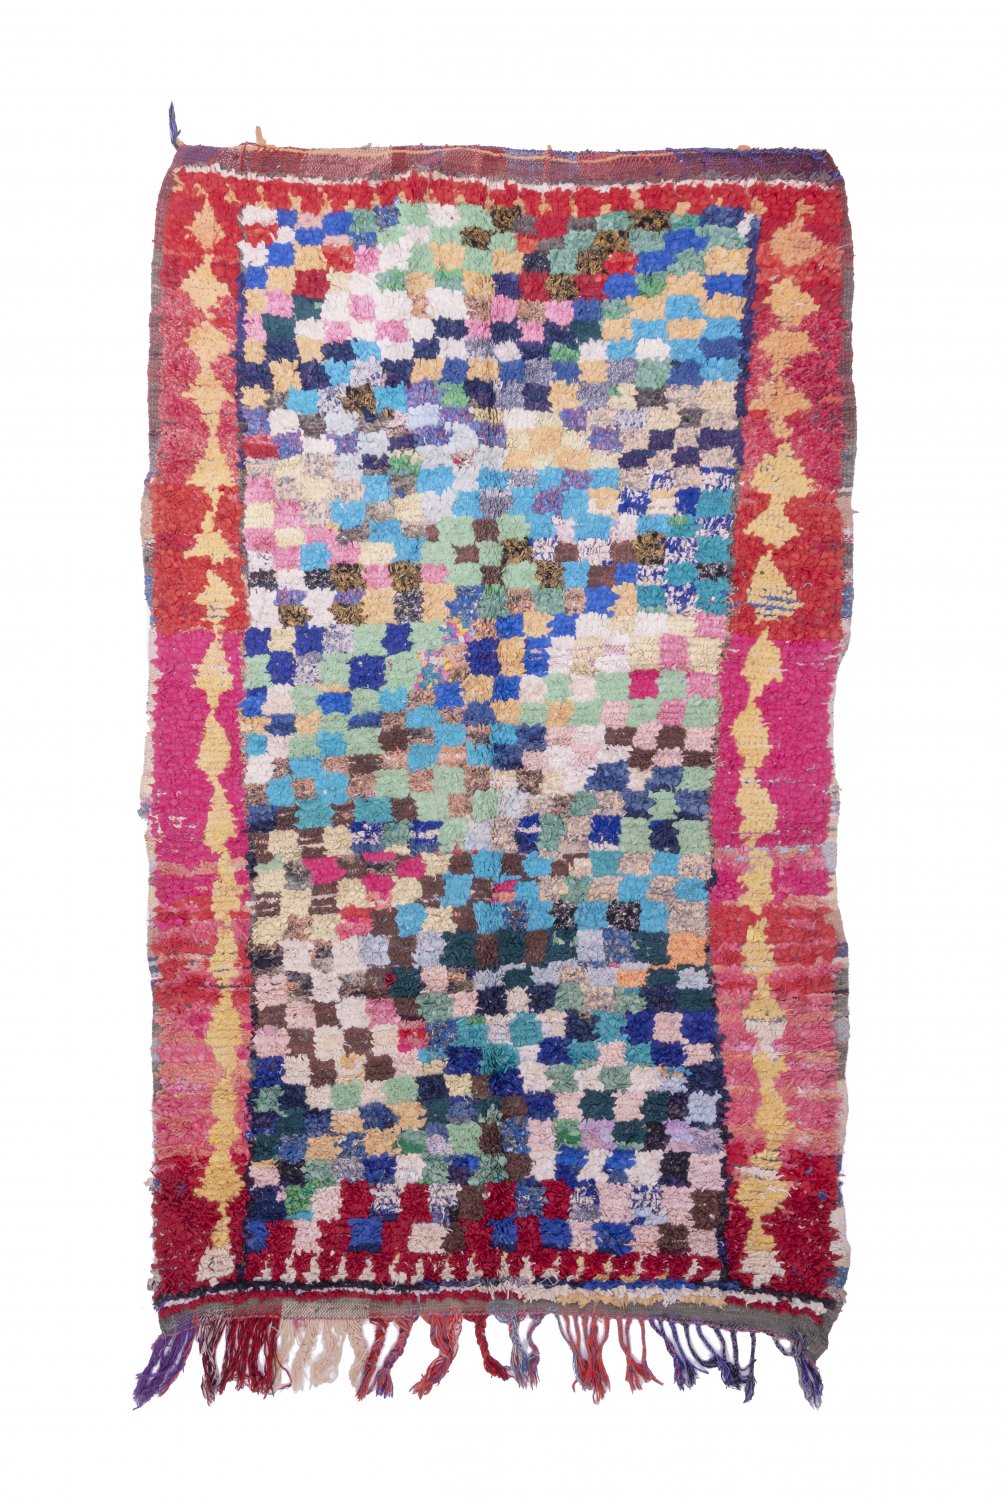 Moroccan Berber rug Boucherouite 275 x 165 cm